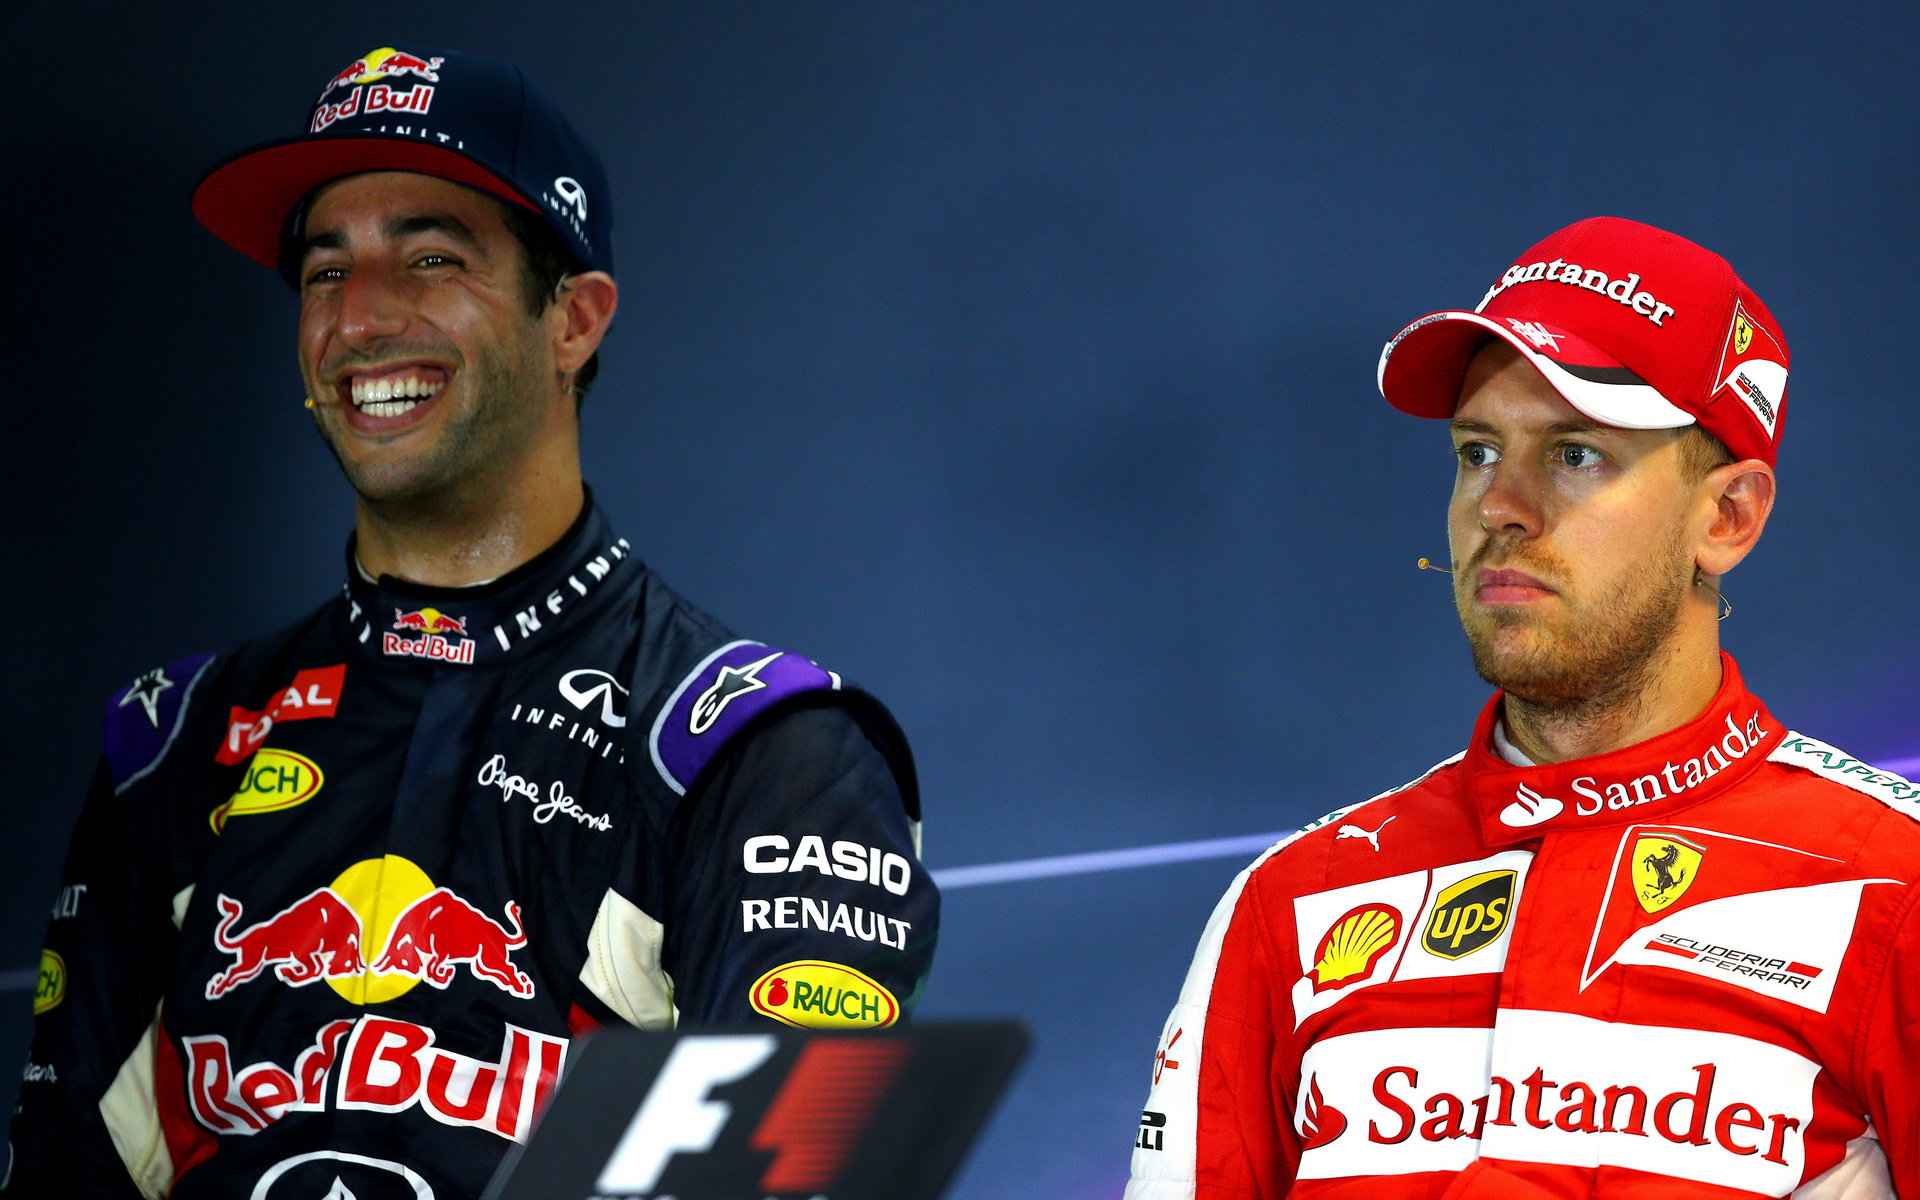 Nováček u Red Bullu čtyřnásobného mistra světa hned porazil, ten se v roce 2015 odebral k Ferrari